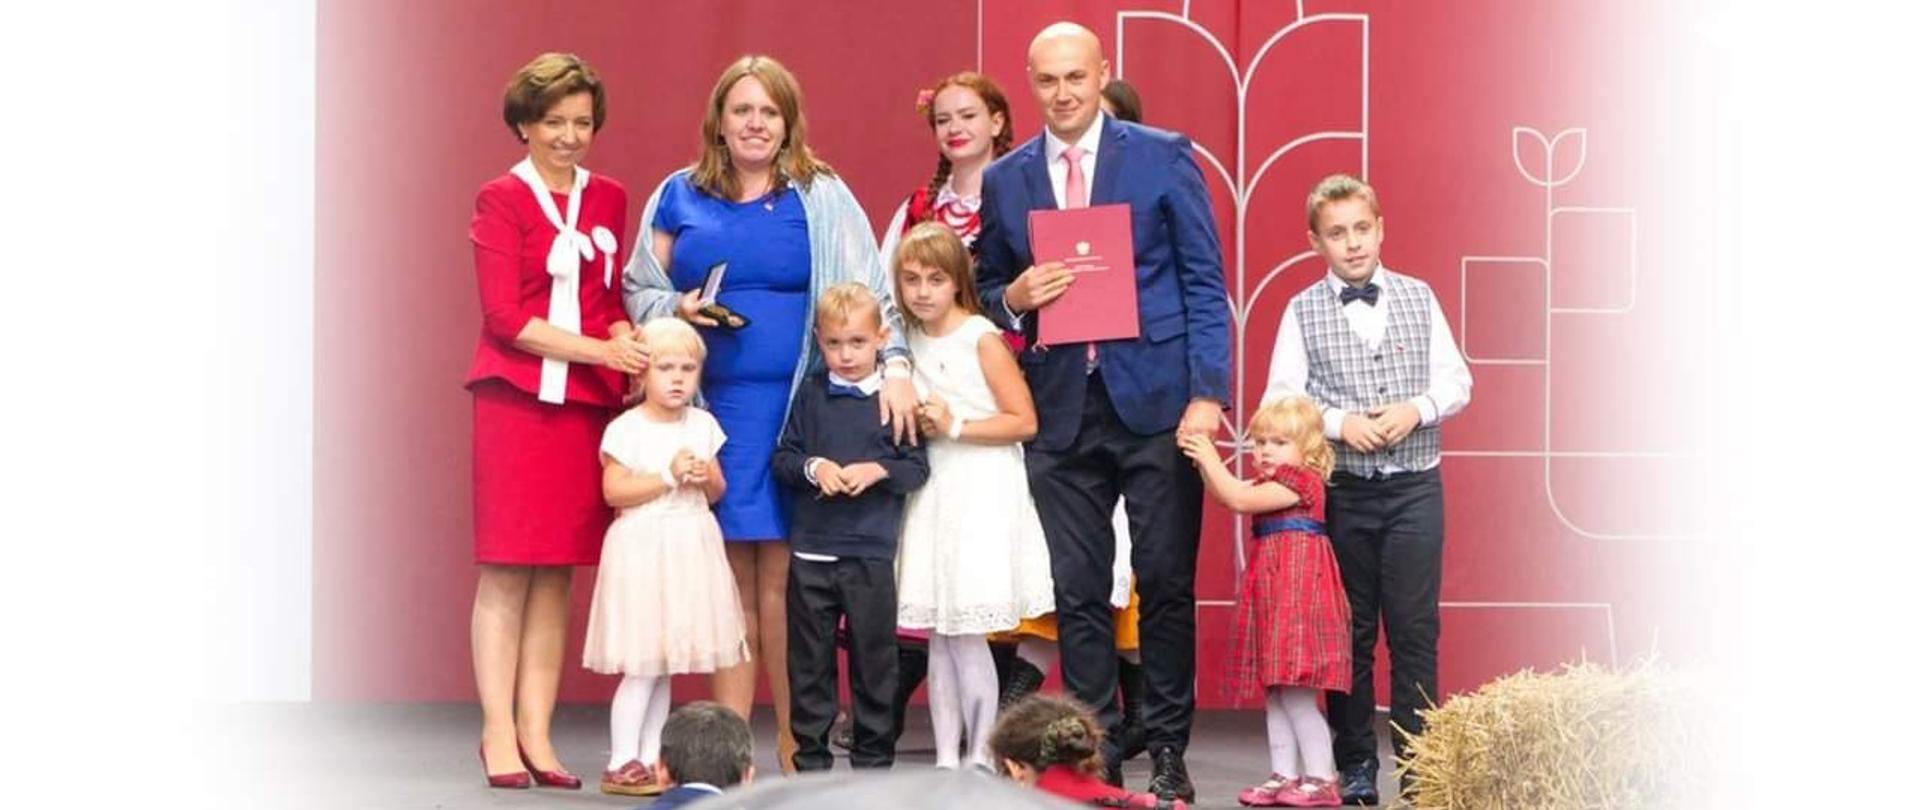 Zdjęcie grupowe, podobne do zdjęcia rodzinnego. Z lewej strony ubrana w czerwony kostium, minister Maląg. Obok niej nagrodzona rodzina. Tata, mama oraz pięcioro dzieci.